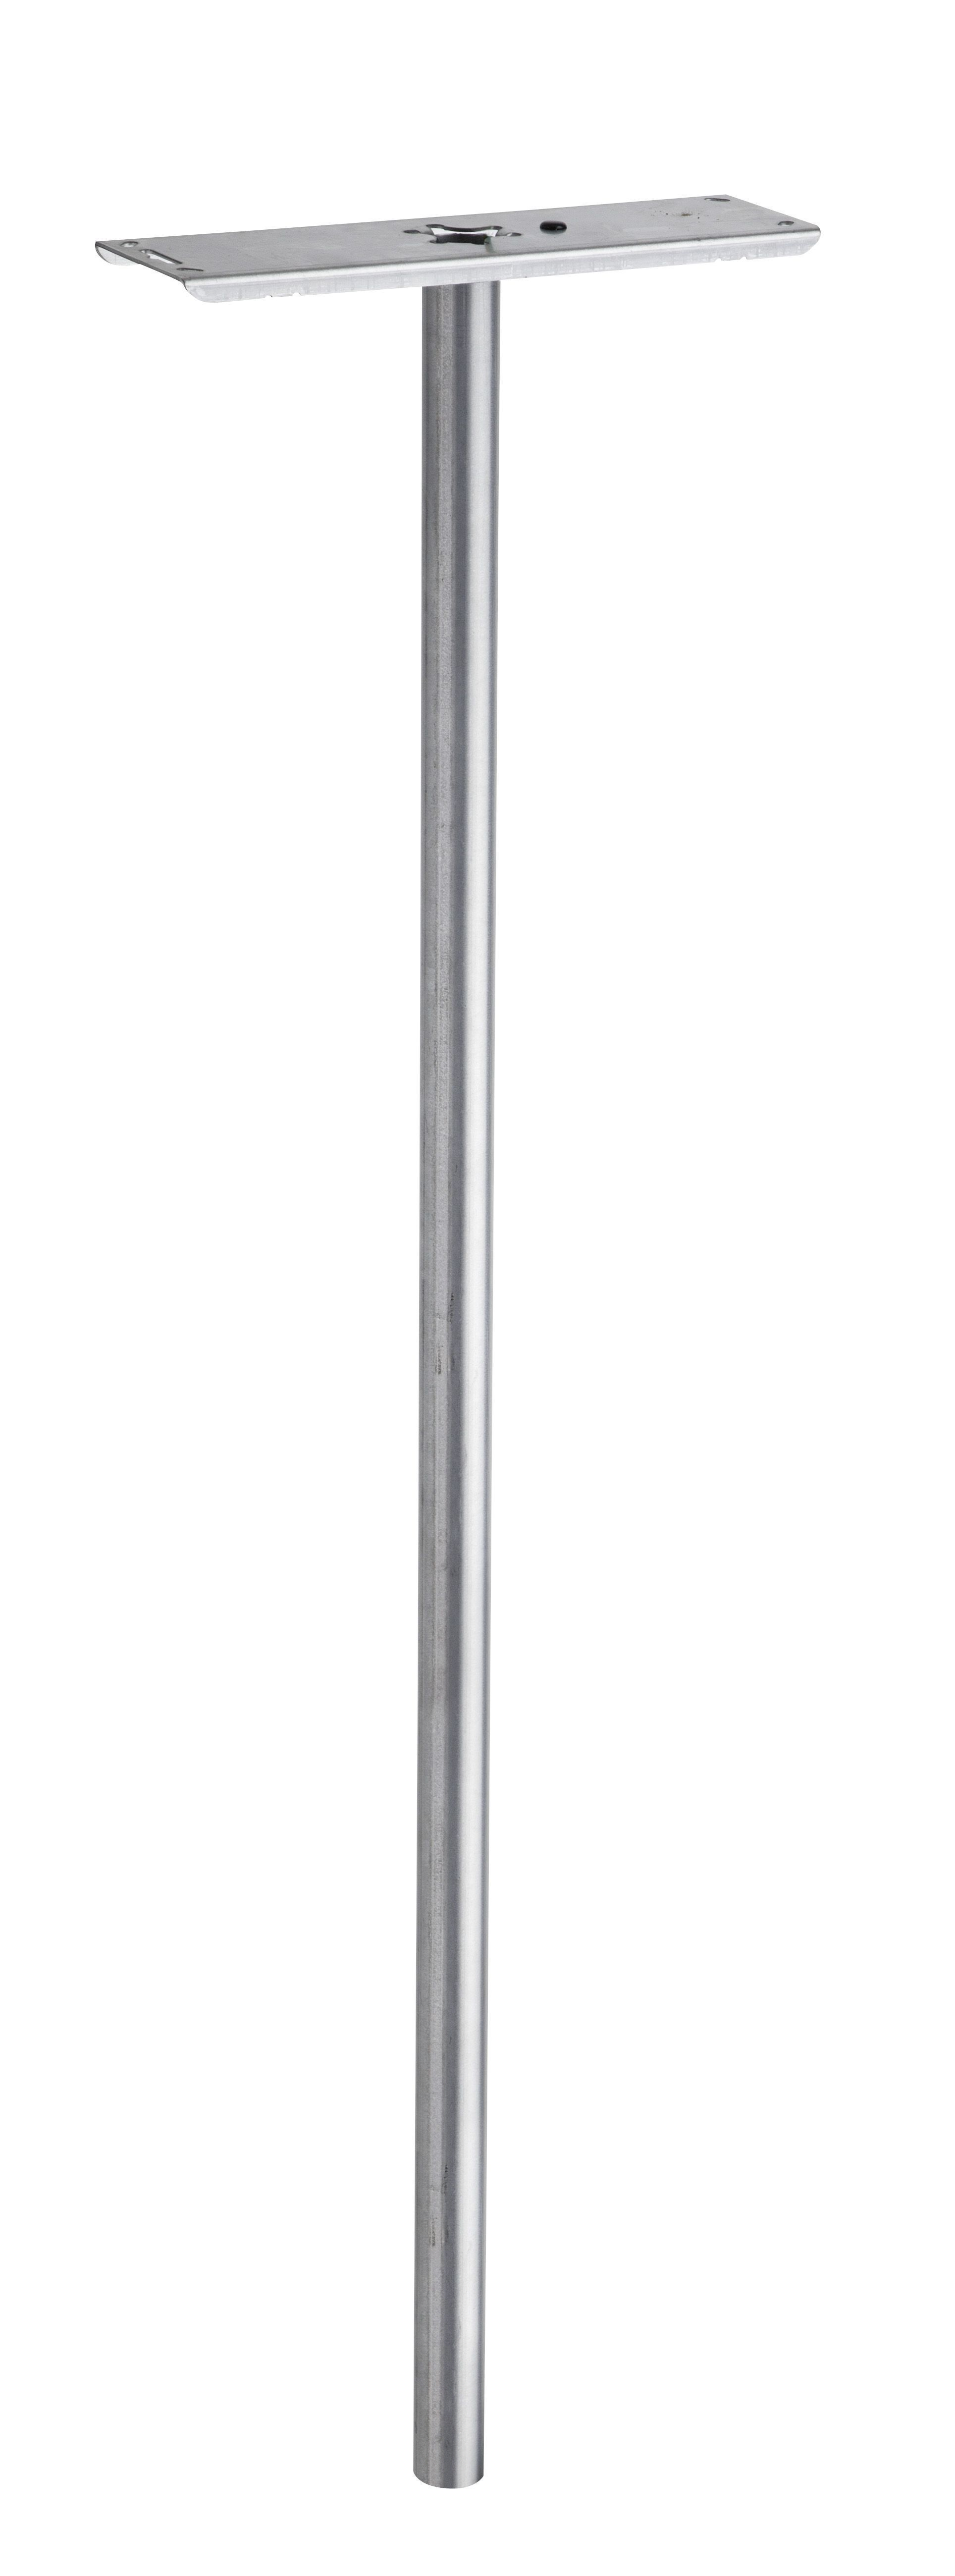 Poste buzón galvanizado, altura 110 cm, diámetro 4,5 cm